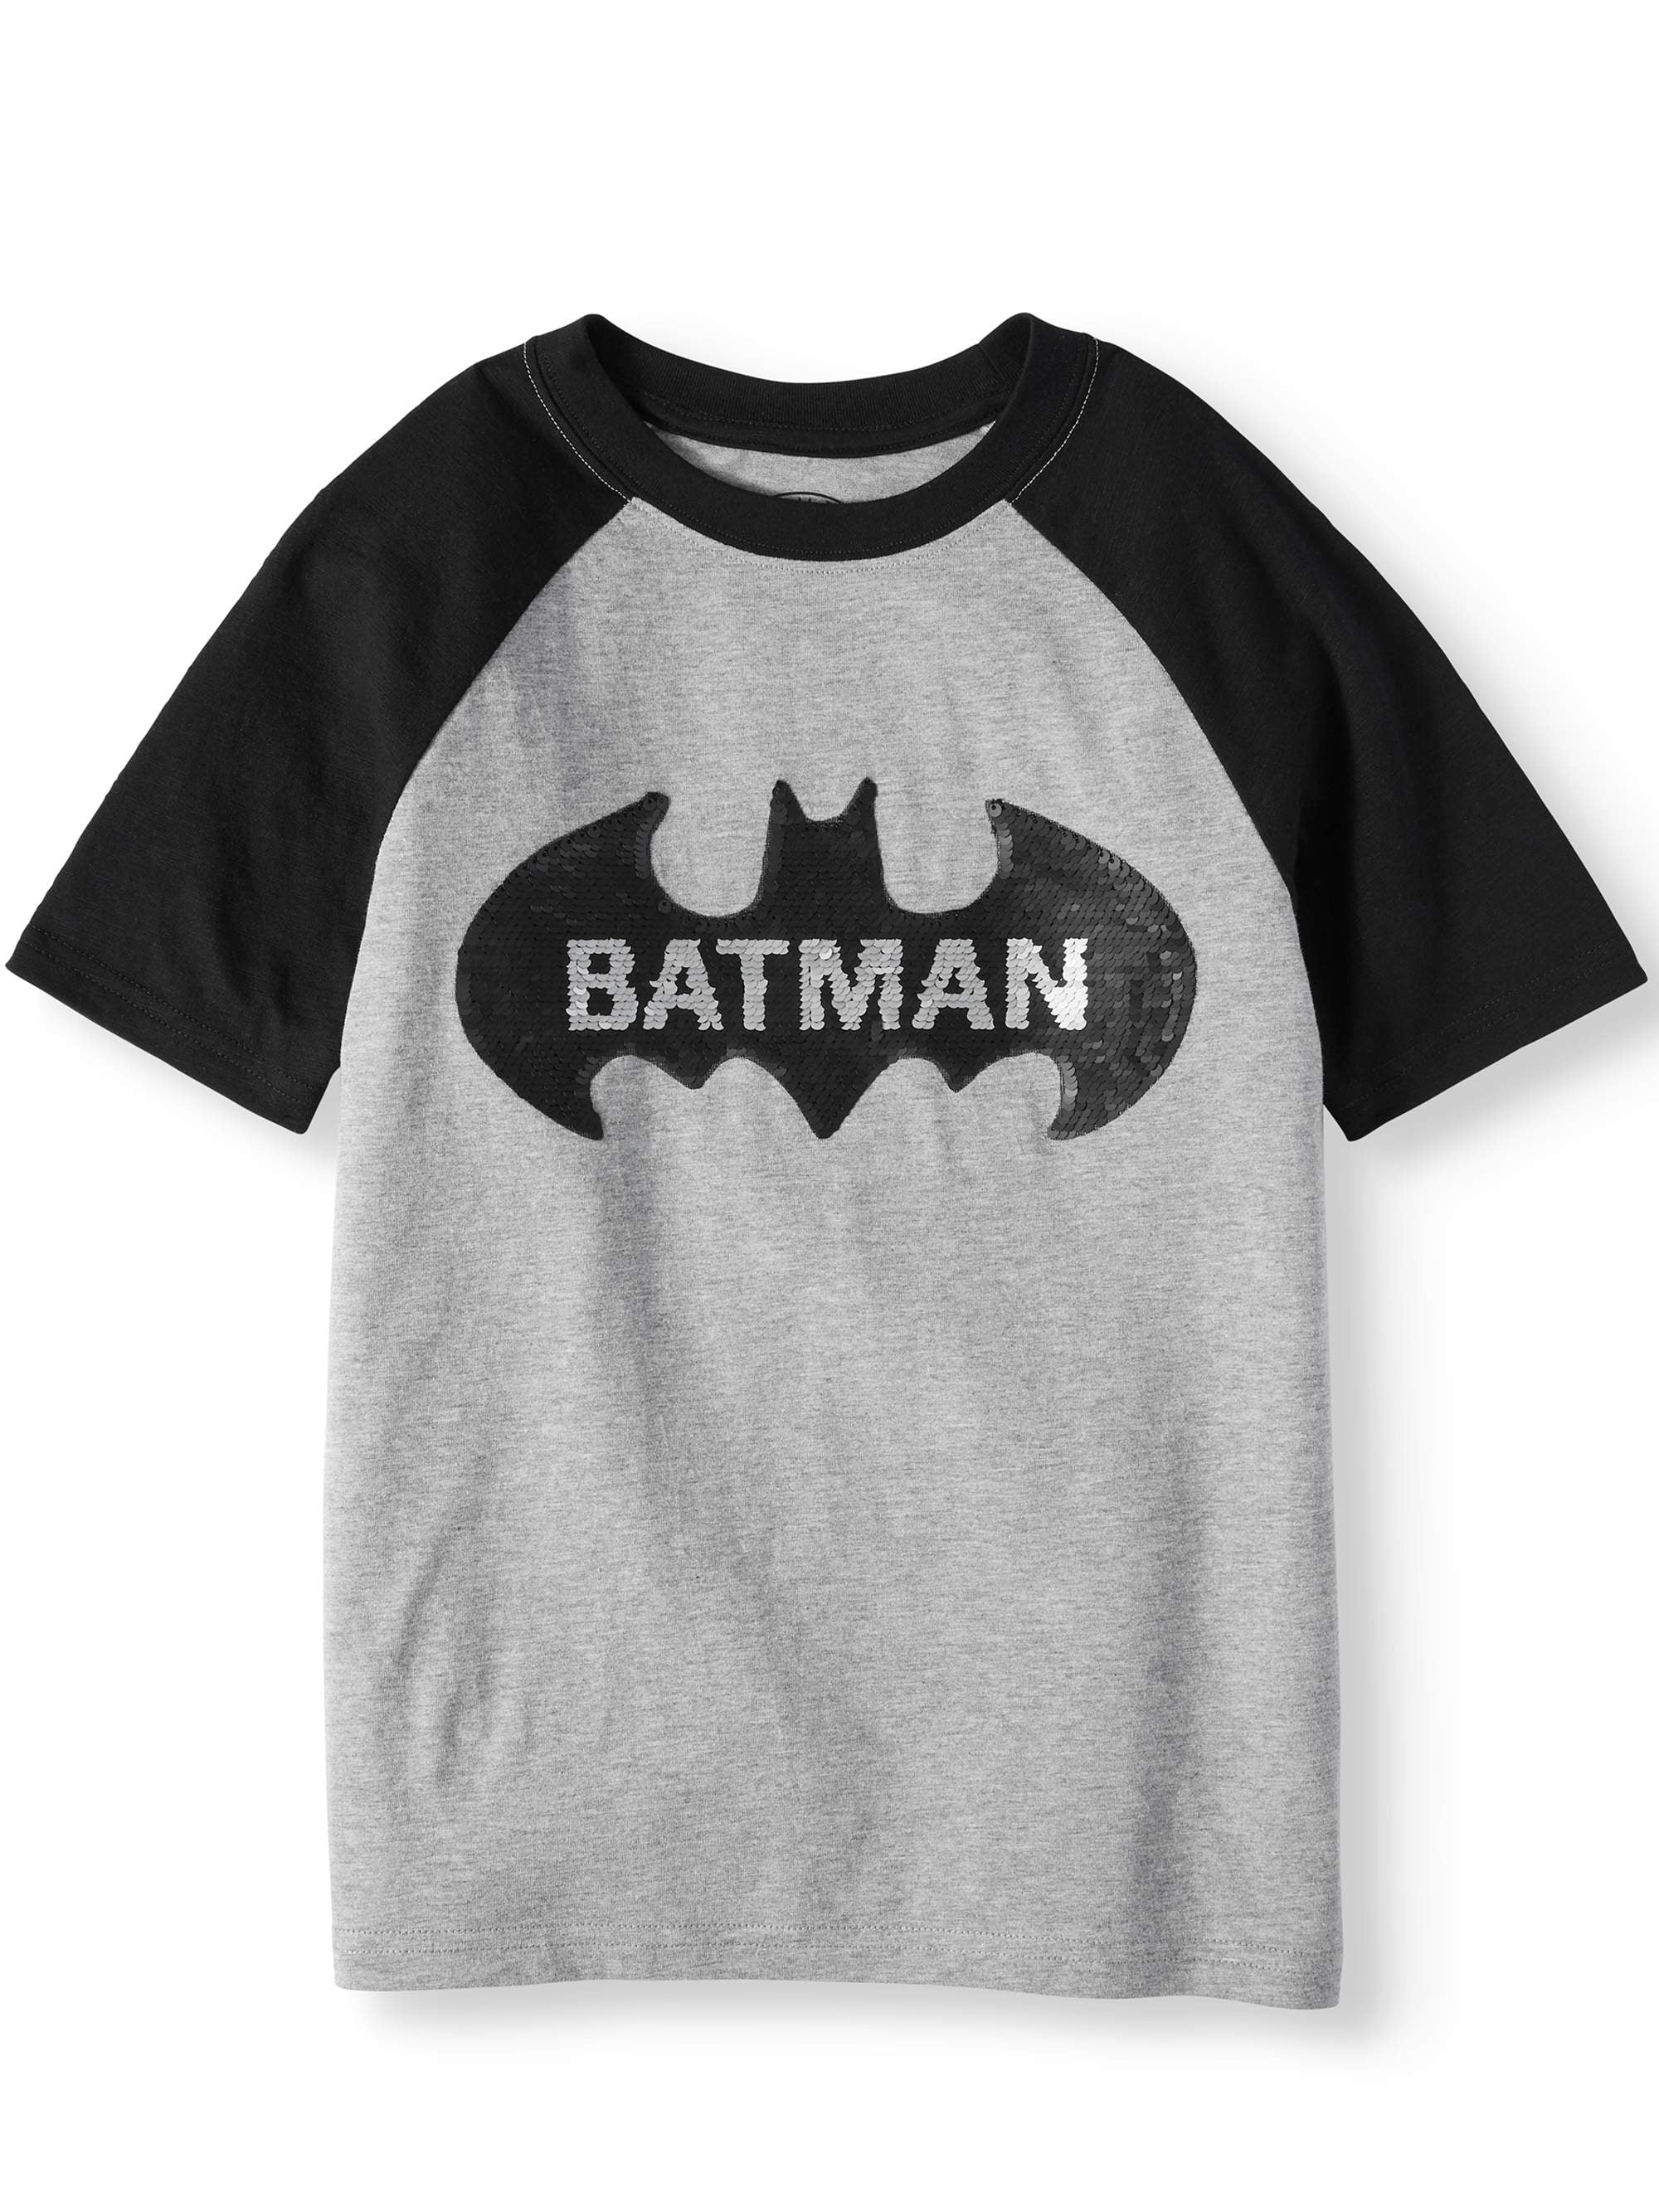 Details about   DC Batman Boys Caped Crusader Flip Sequin Logo Short Sleeve Tee Shirt XXL 18 